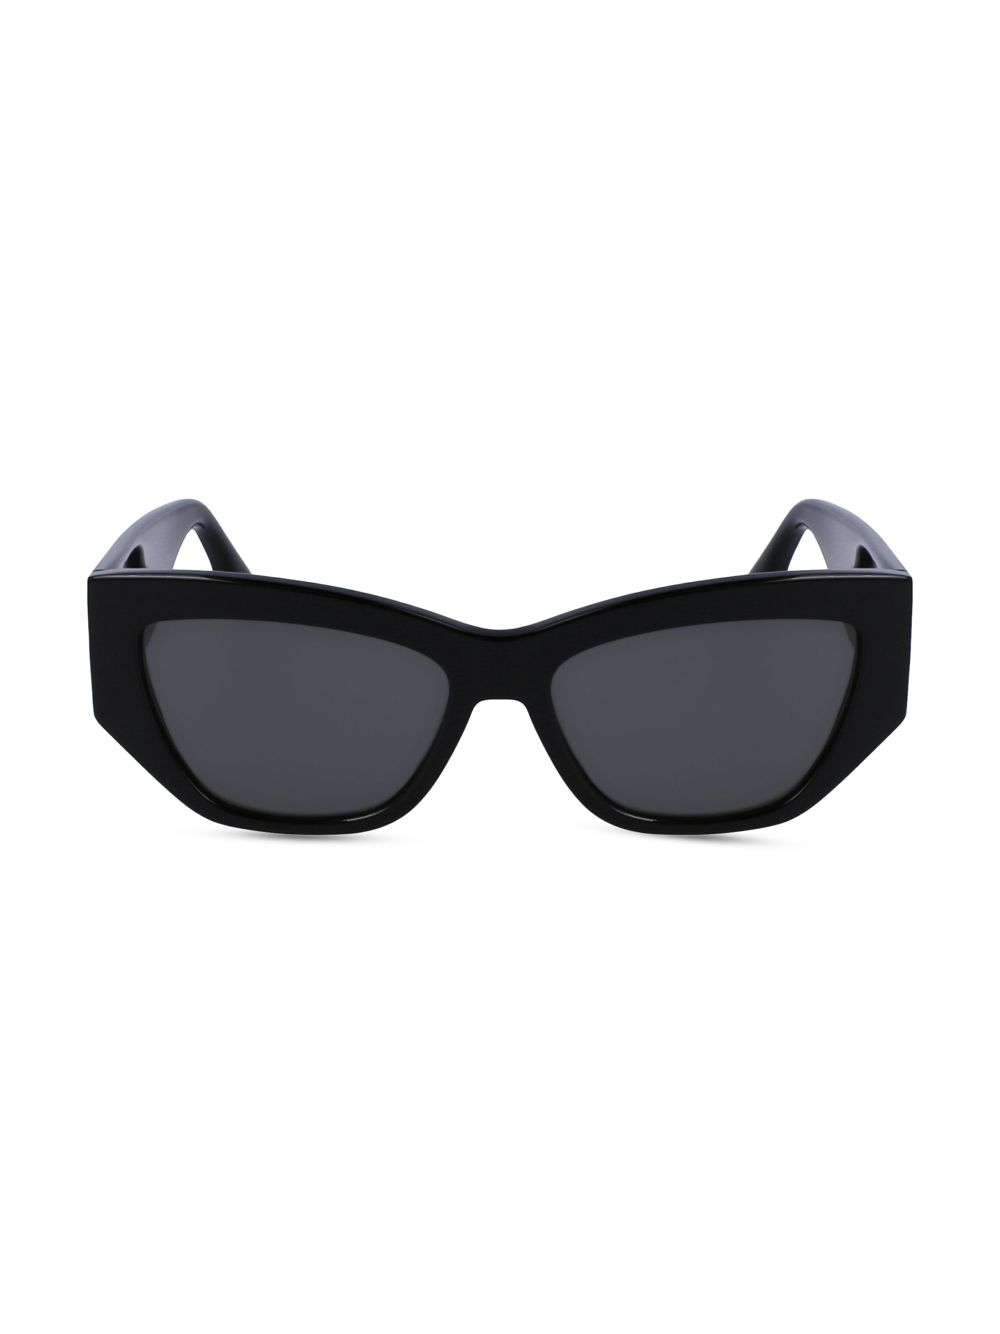 Скульптурные солнцезащитные очки «кошачий глаз» 55 мм Victoria Beckham, черный очки кошачий глаз vb602s victoria beckham